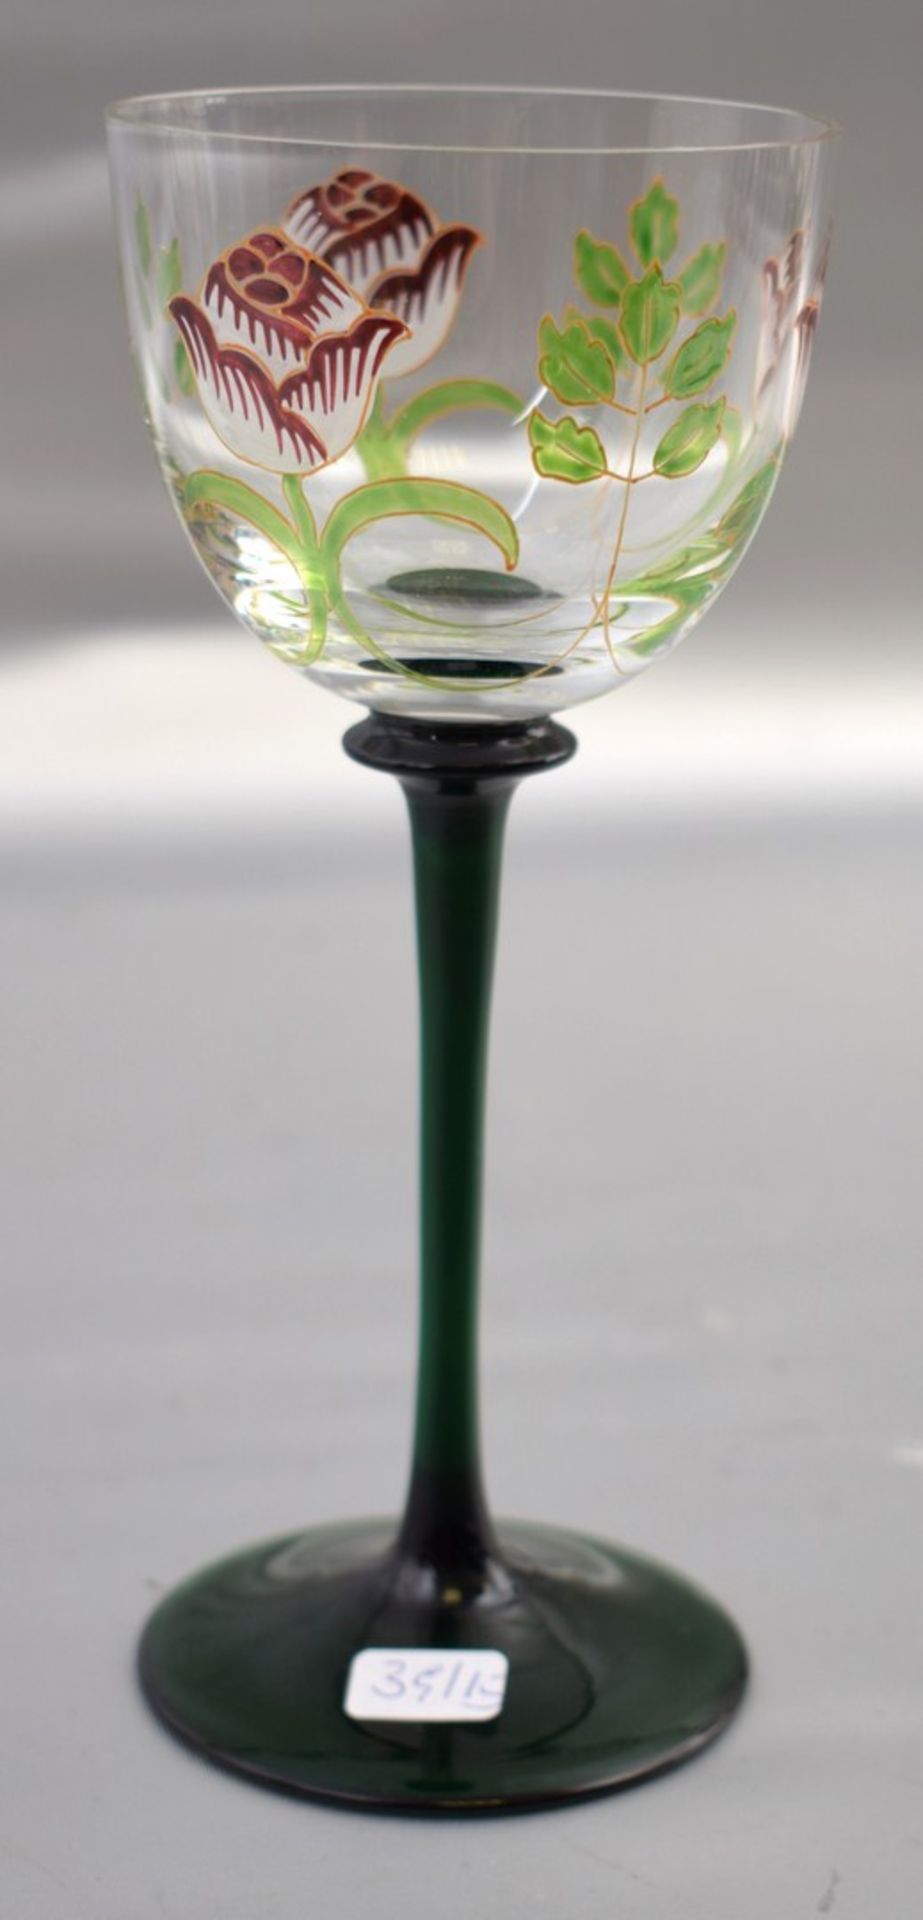 Weinglas farbl. Glas, grüner Schaft, Kelch mit bunter Blumenbemalung, H 18 cm, um 1900